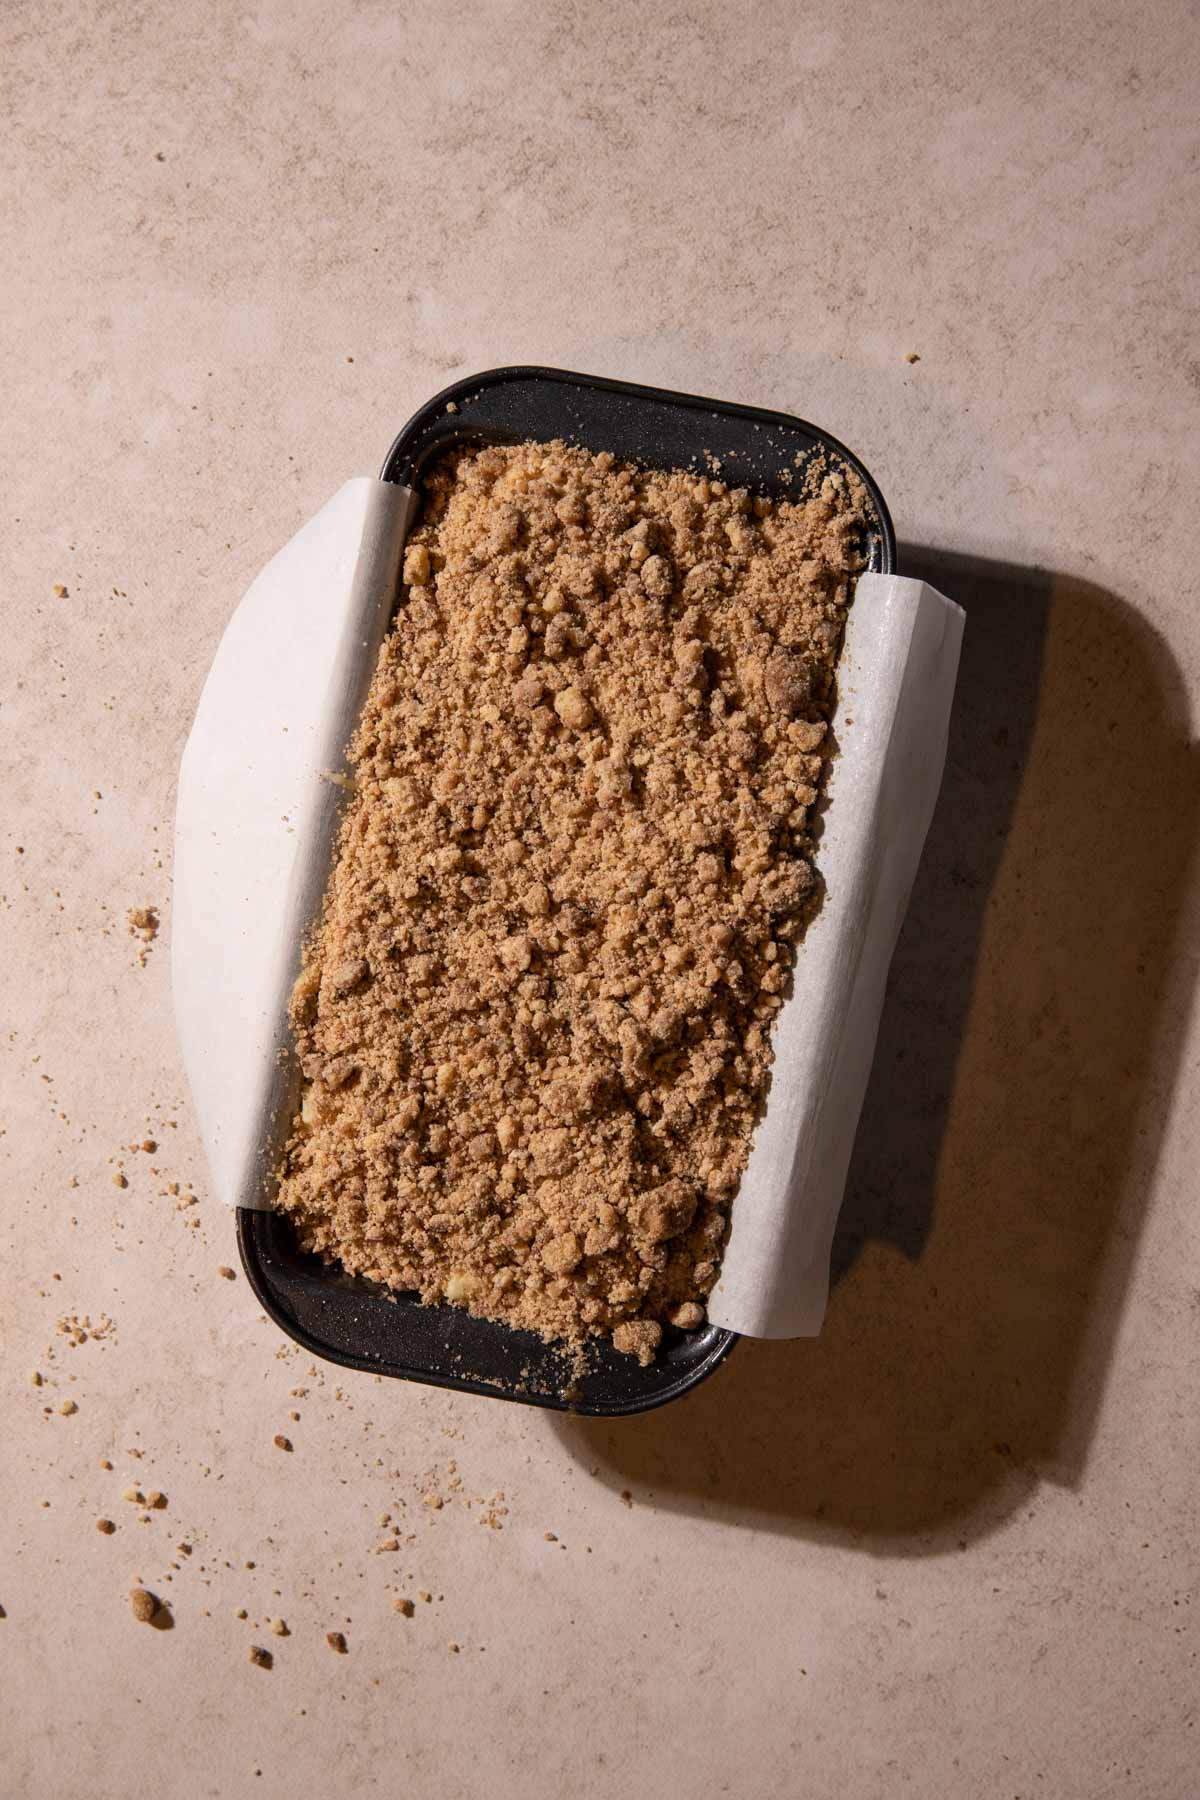 Apple streusel cake batter in a loaf pan